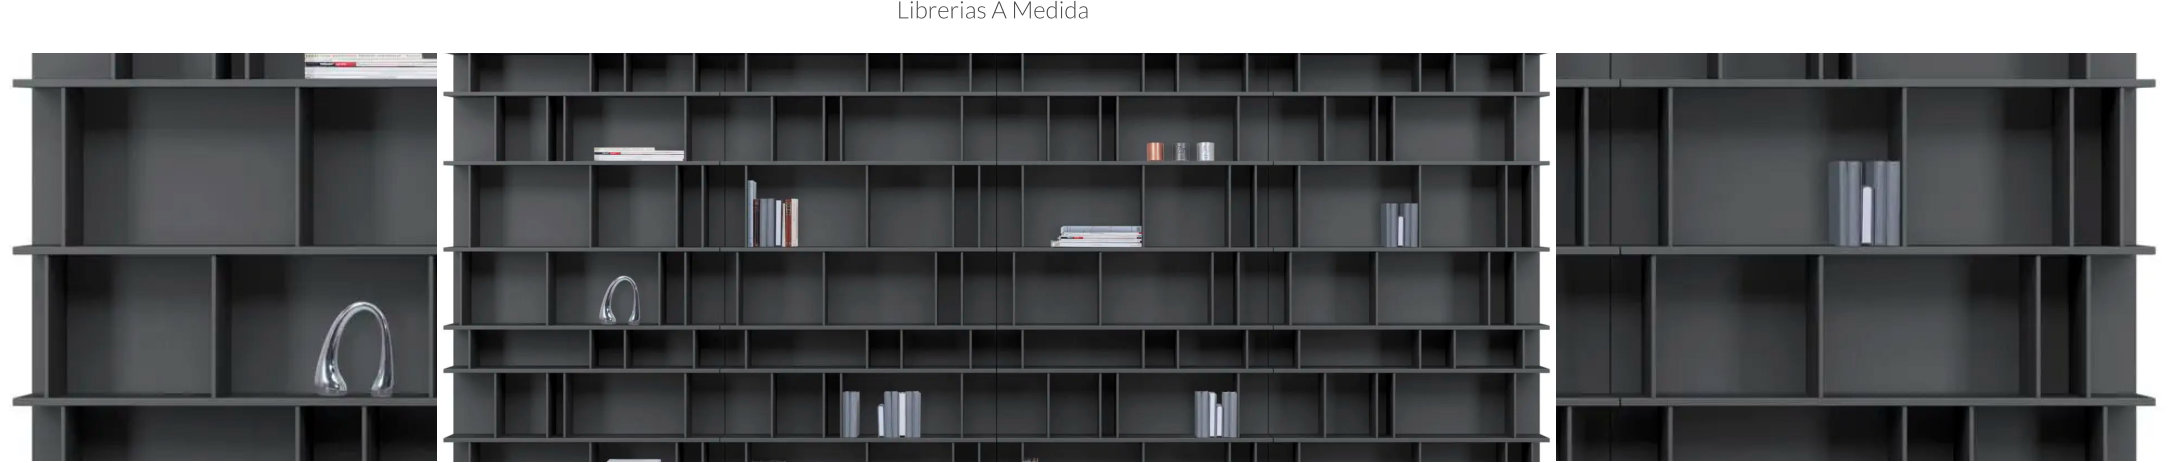 Librerías a Medida Madrid | Armarios Ikono